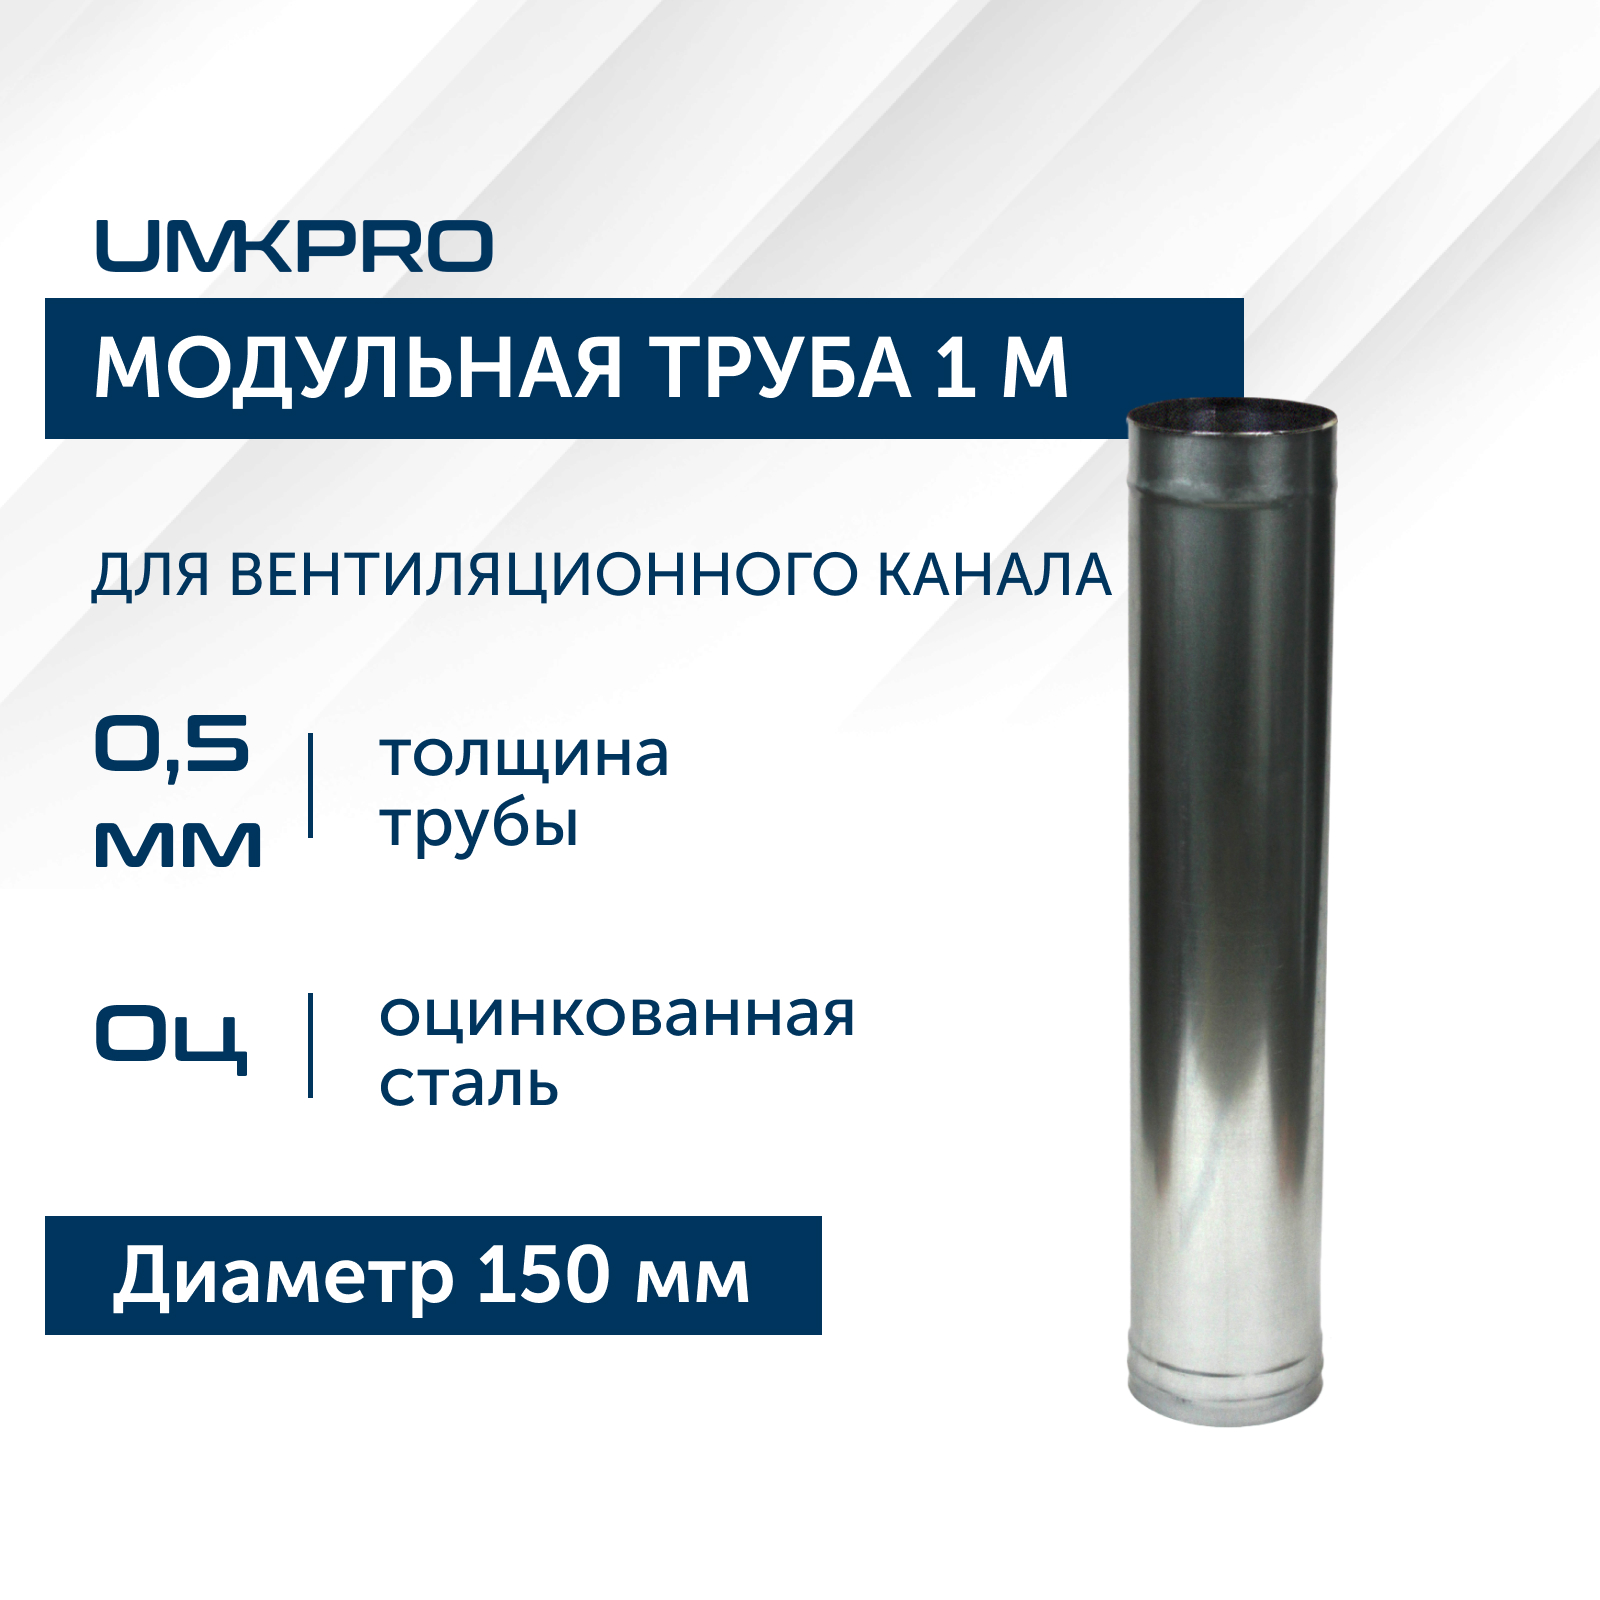 Труба модульная для дымохода 1 м UMKPRO, D 150, Оц/0,5мм модульная гостиная порту 18 мдф